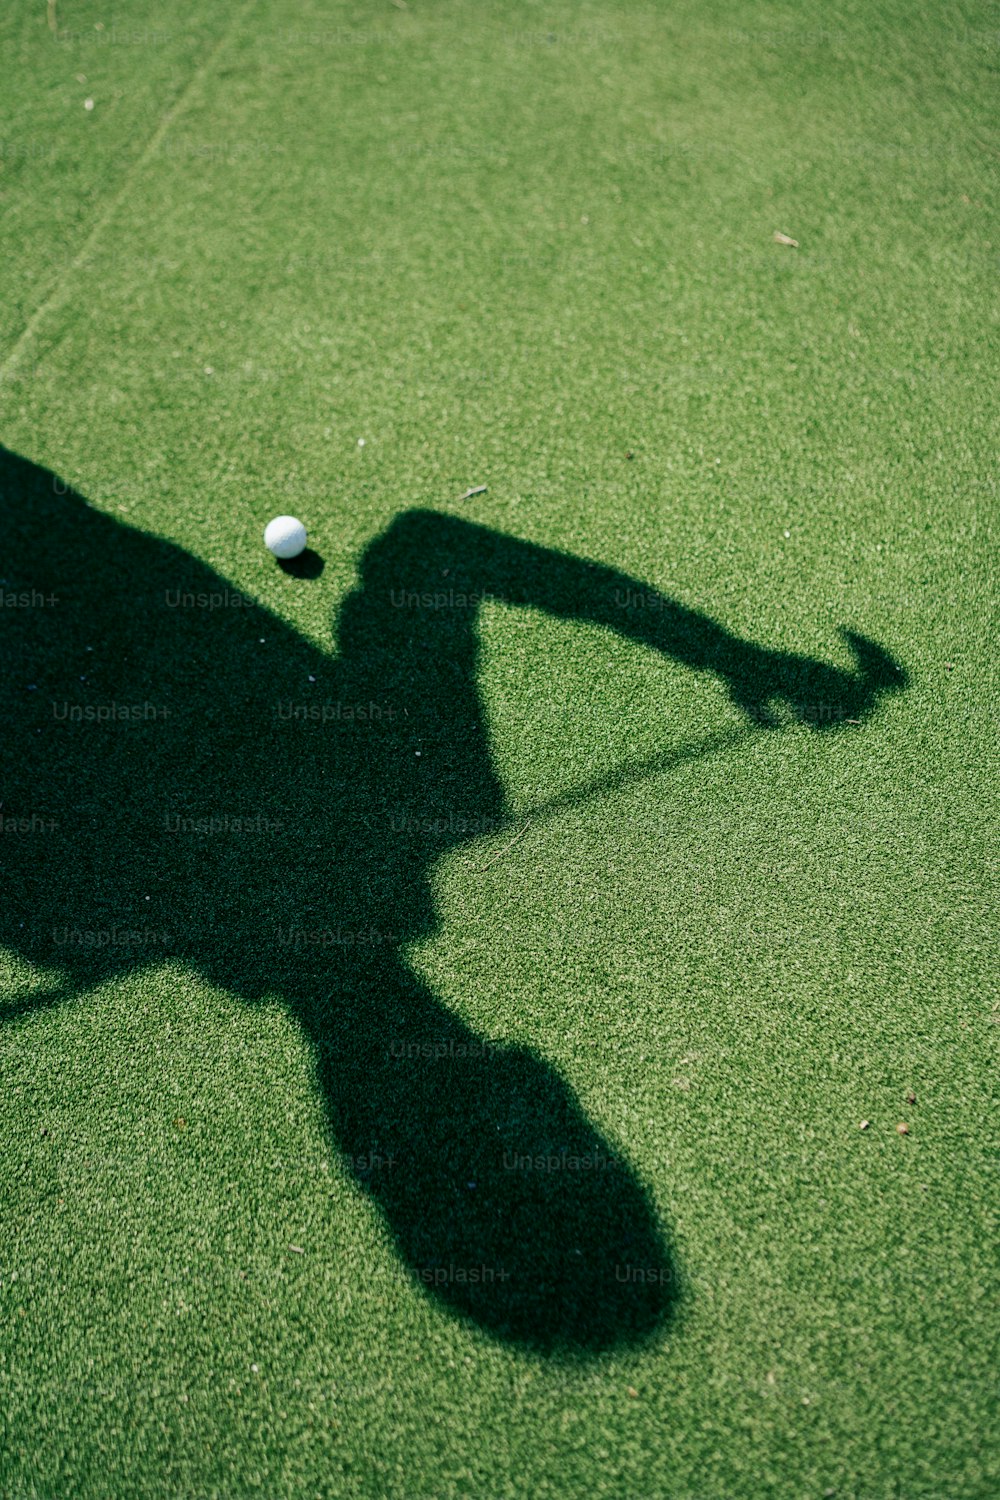 l’ombre d’une personne frappant une balle de tennis